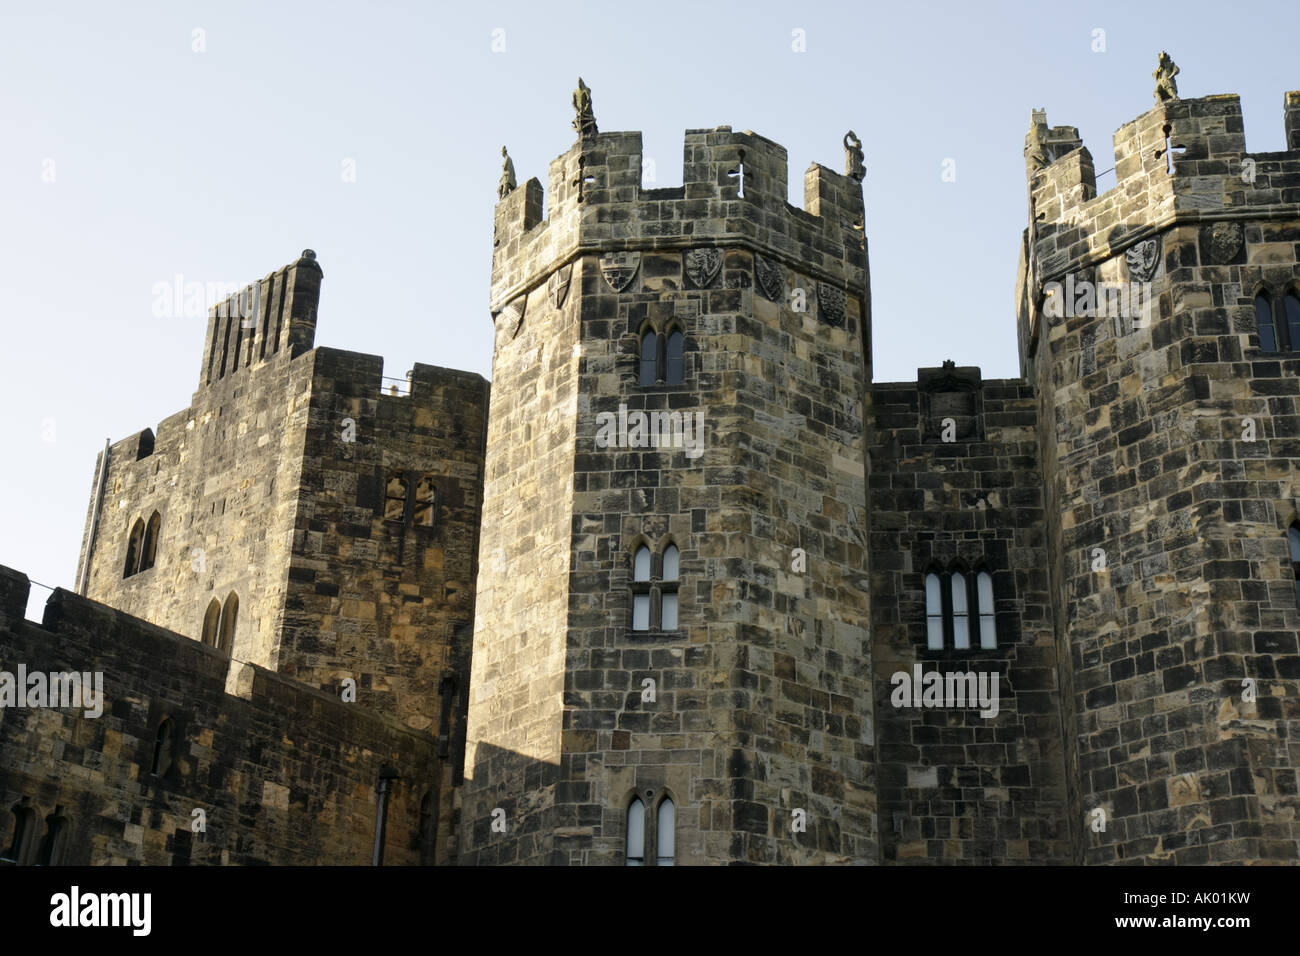 Vereinigtes Königreich England Northumberland, Alnwick, Alnwick Castle, 11. Jahrhundert, normannische Architektur, Harry Potter-Film-Website, UK071002074 Stockfoto